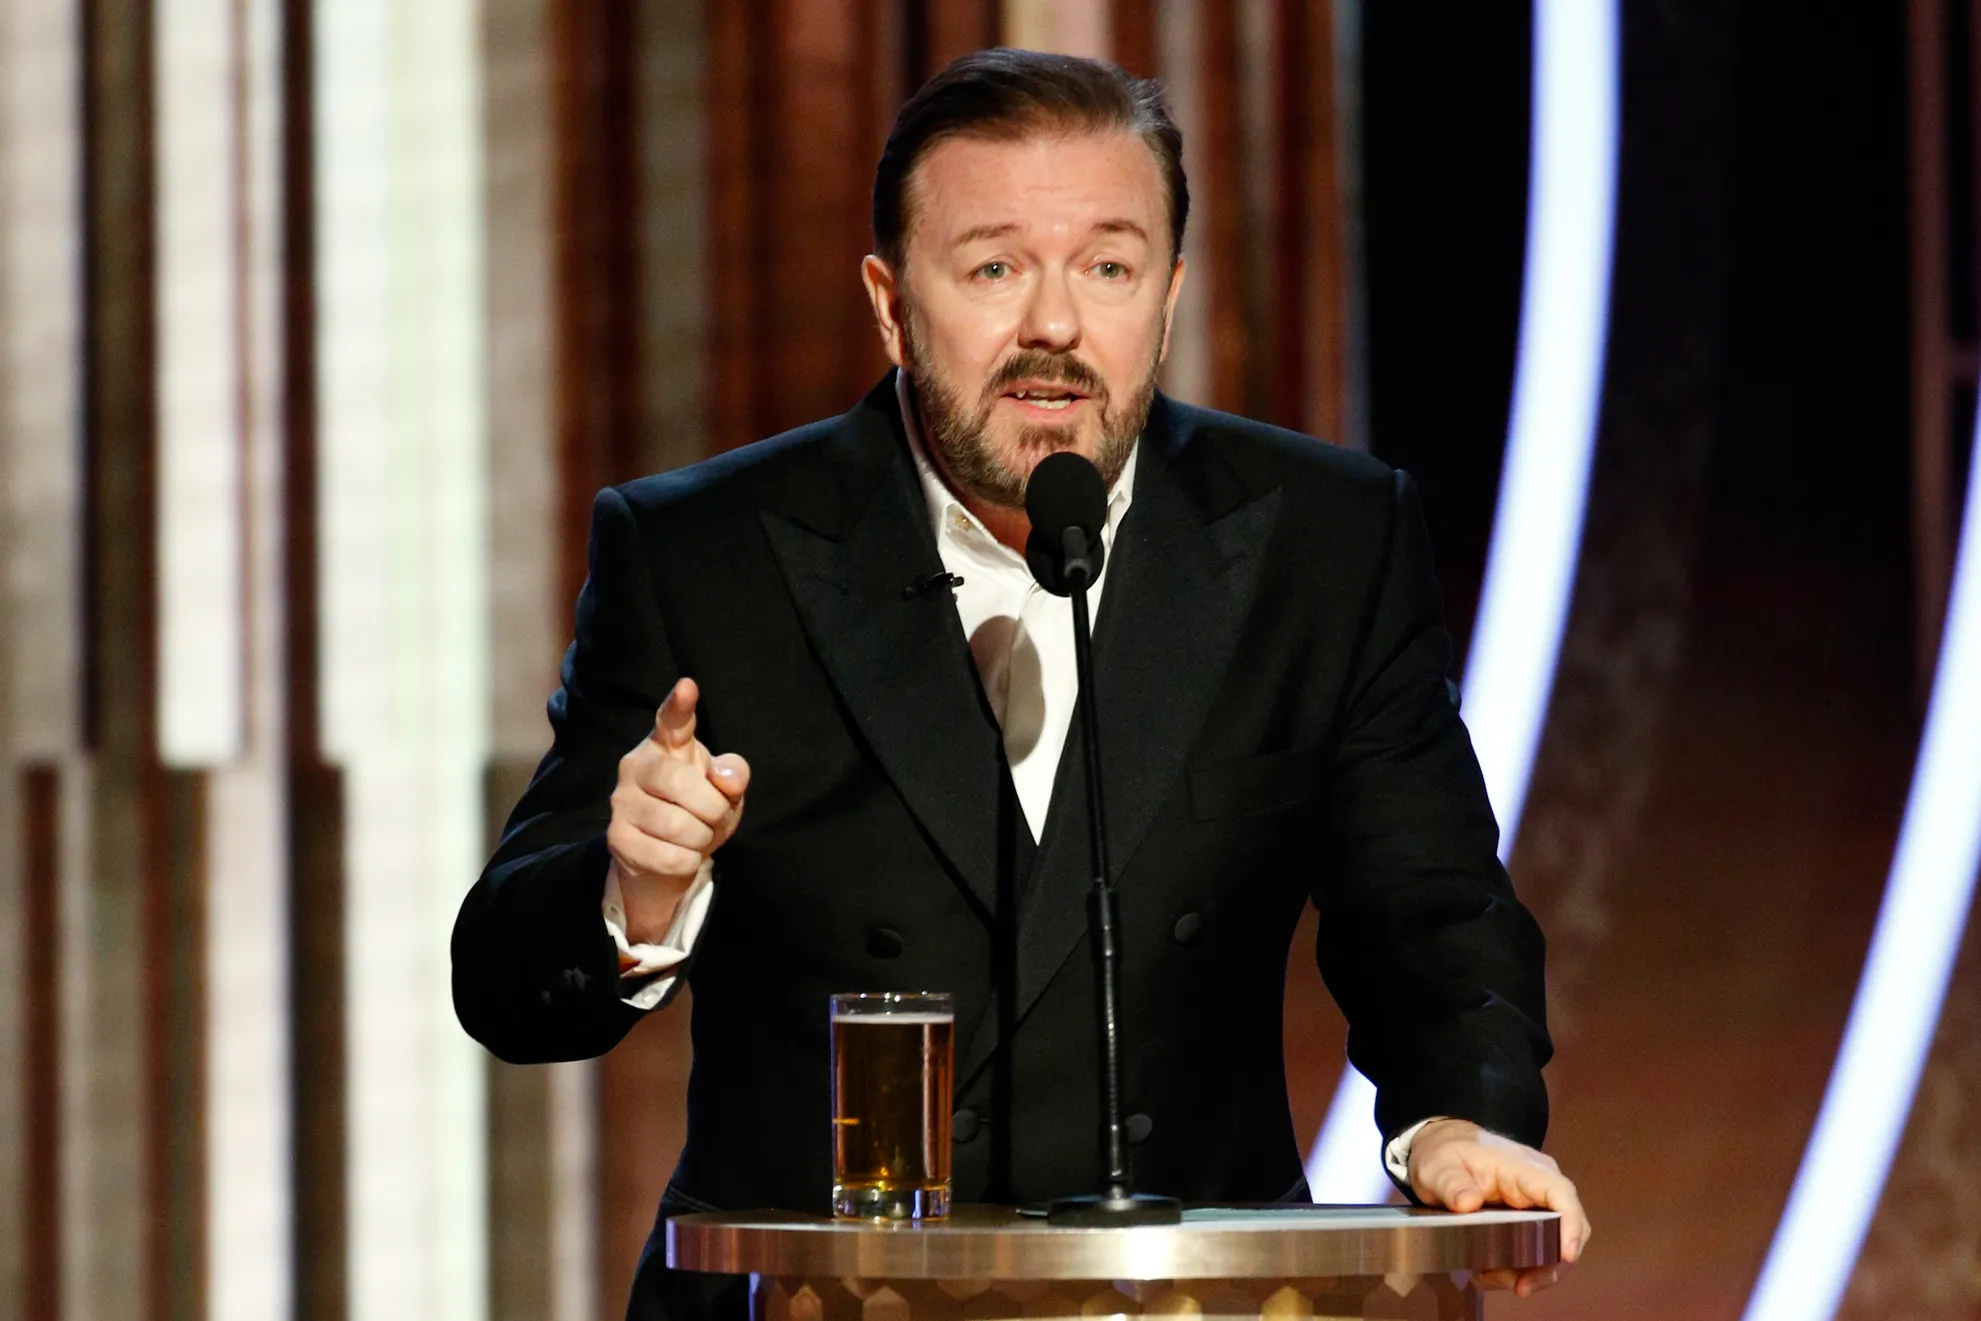 El Discurso De Ricky Gervais En Los Globos De Oro 2020 Se Vuelve Viral Tras Publicarse La Lista 3232